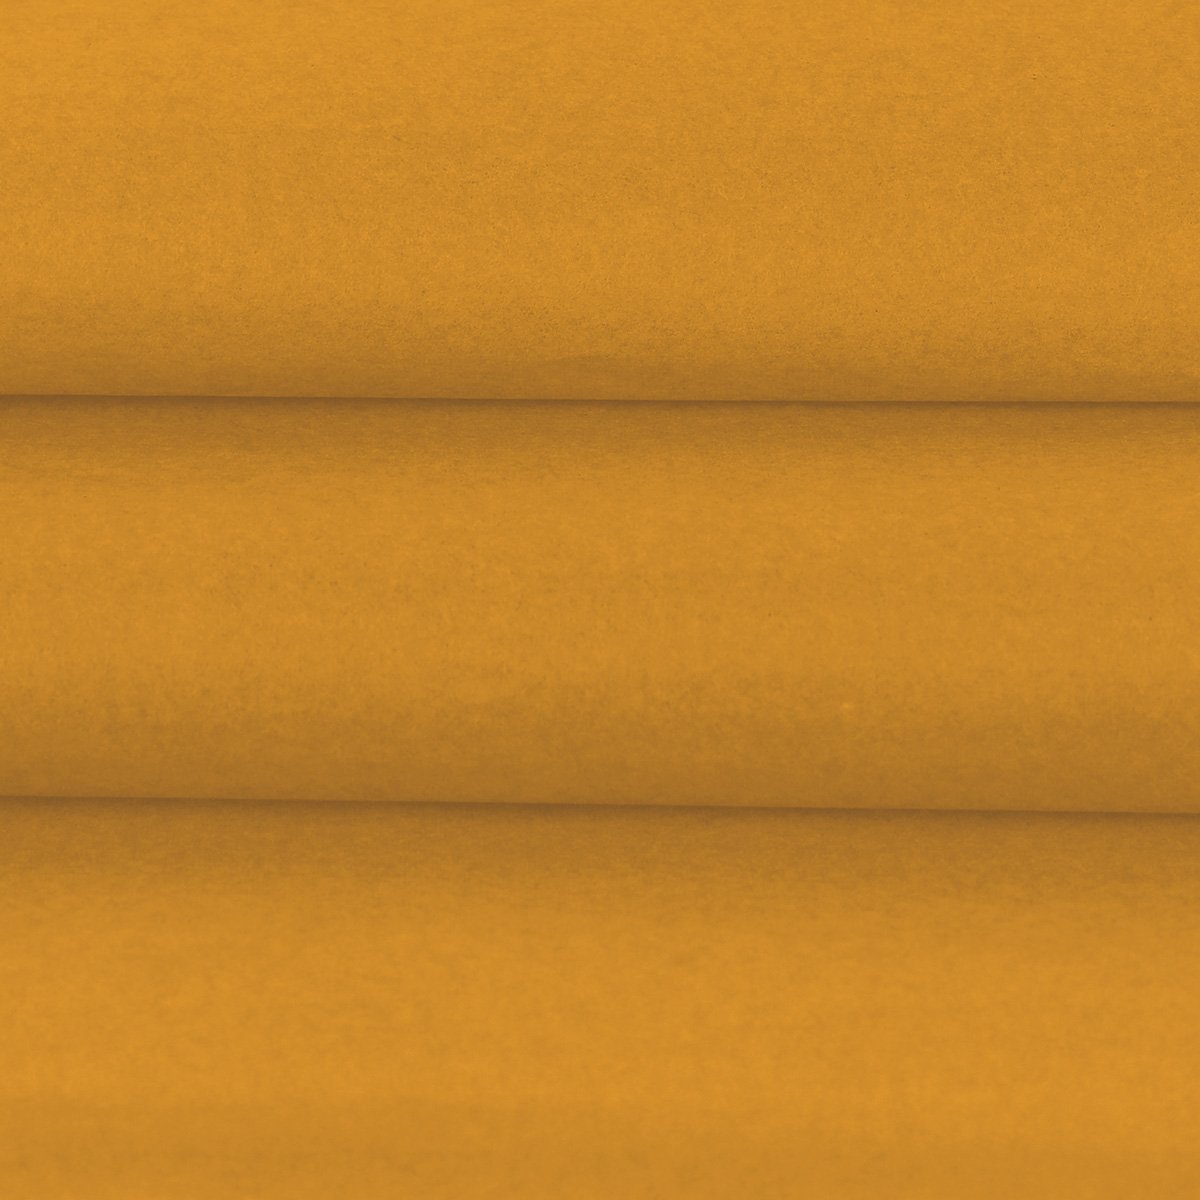 Vloeipapier kleur Geel